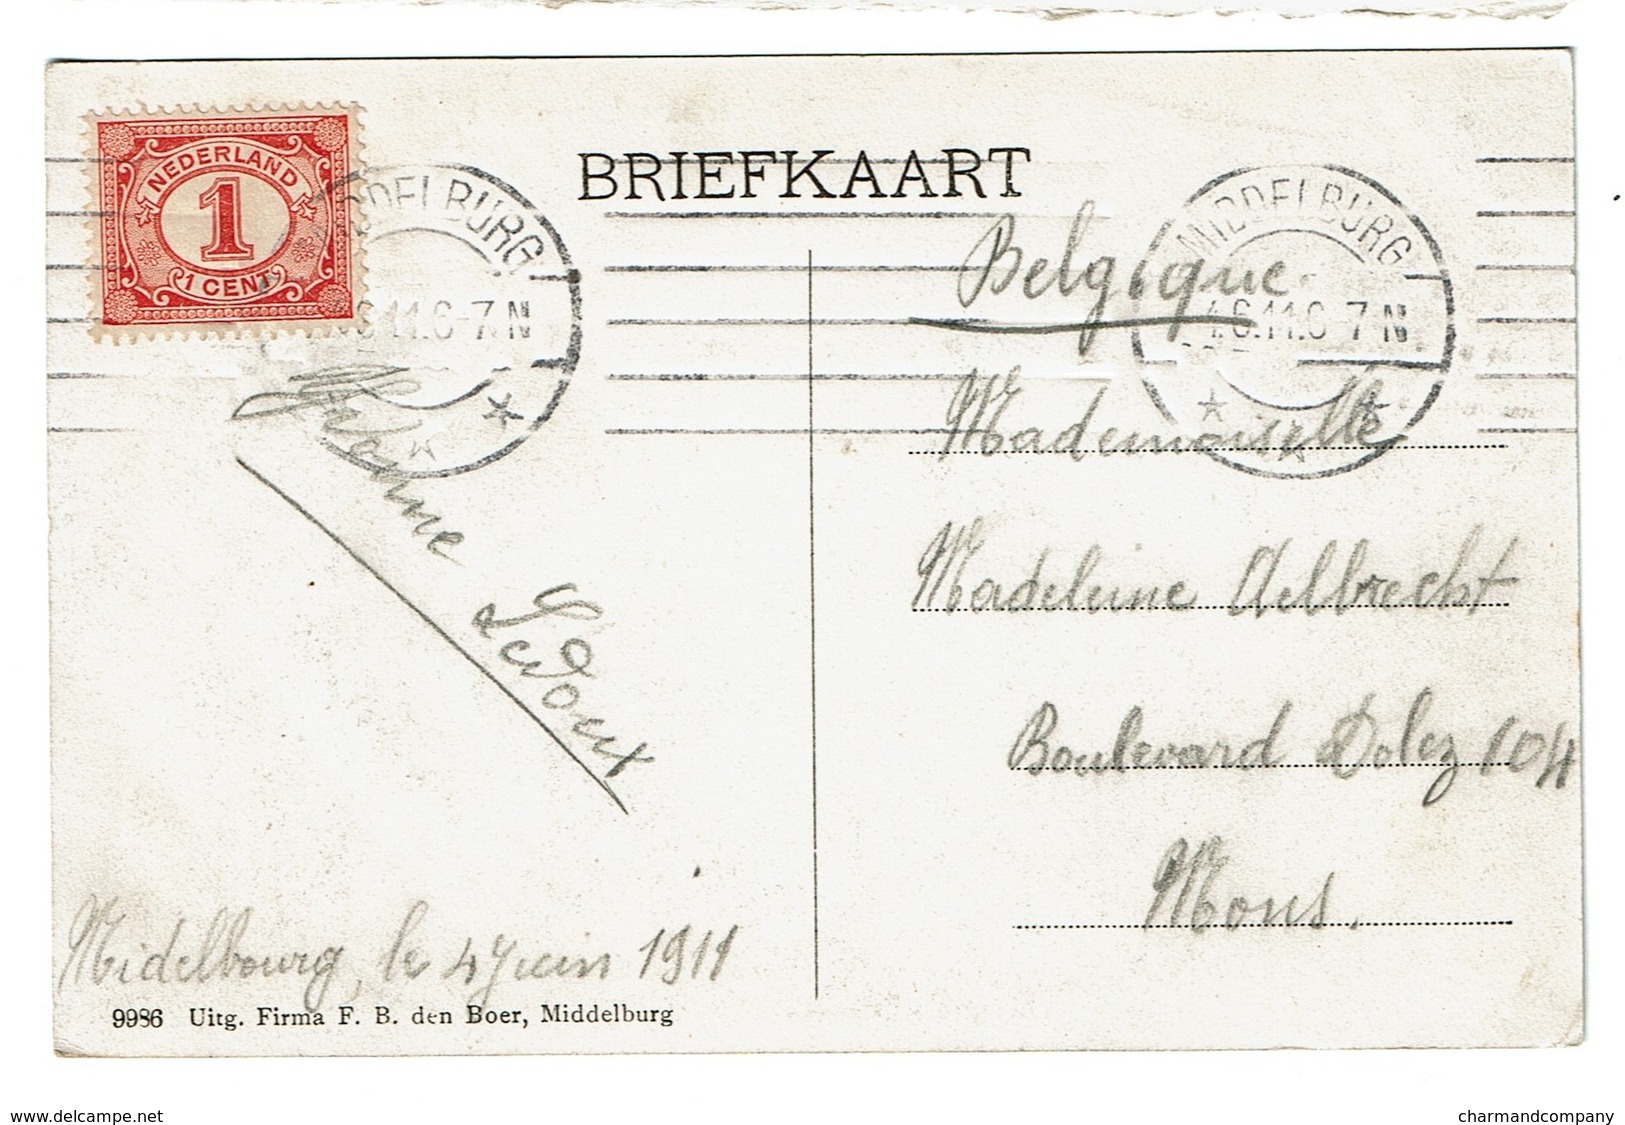 Middelburg - Langeviele Buitenbrug Met Electrische Tram - Molen - Circ. En 1911 - Tramway - Uitg. F.B. Den Boer - 2 Scan - Middelburg